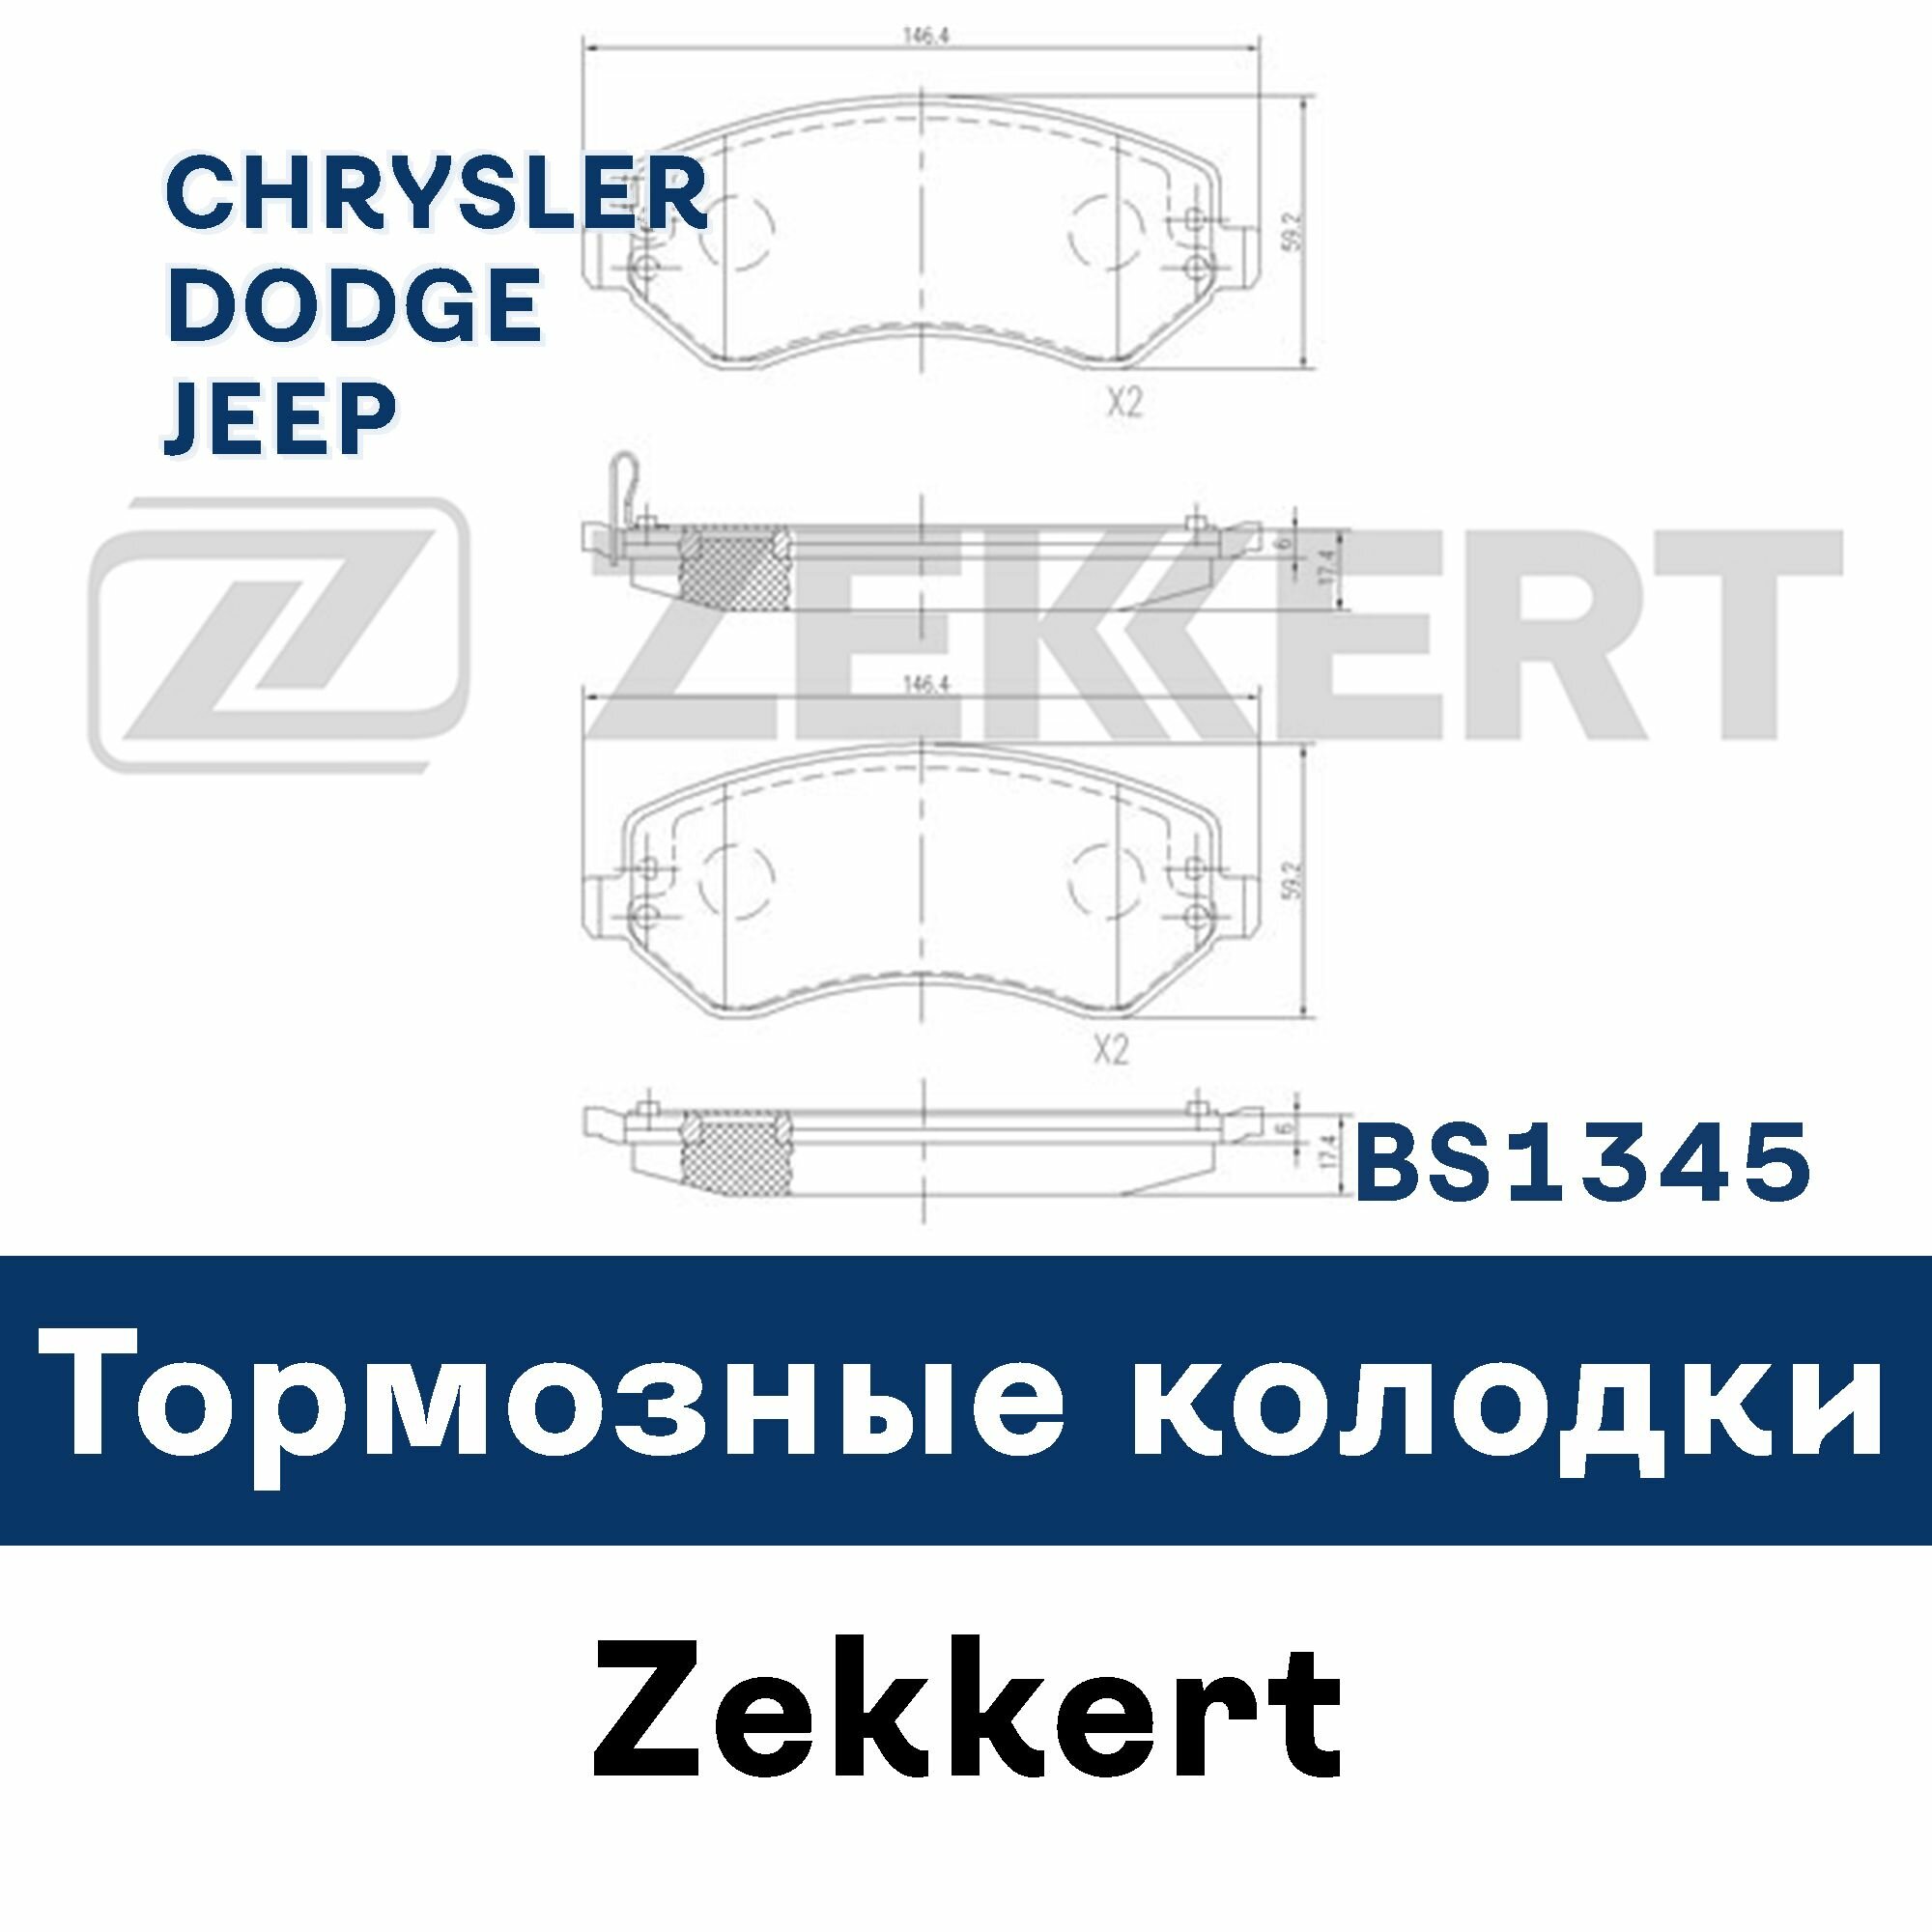 Тормозные колодки для VOYAGER IV (RG RS) CARAVAN (RG_) CHEROKEE (KJ) BS1345 ZEKKERT